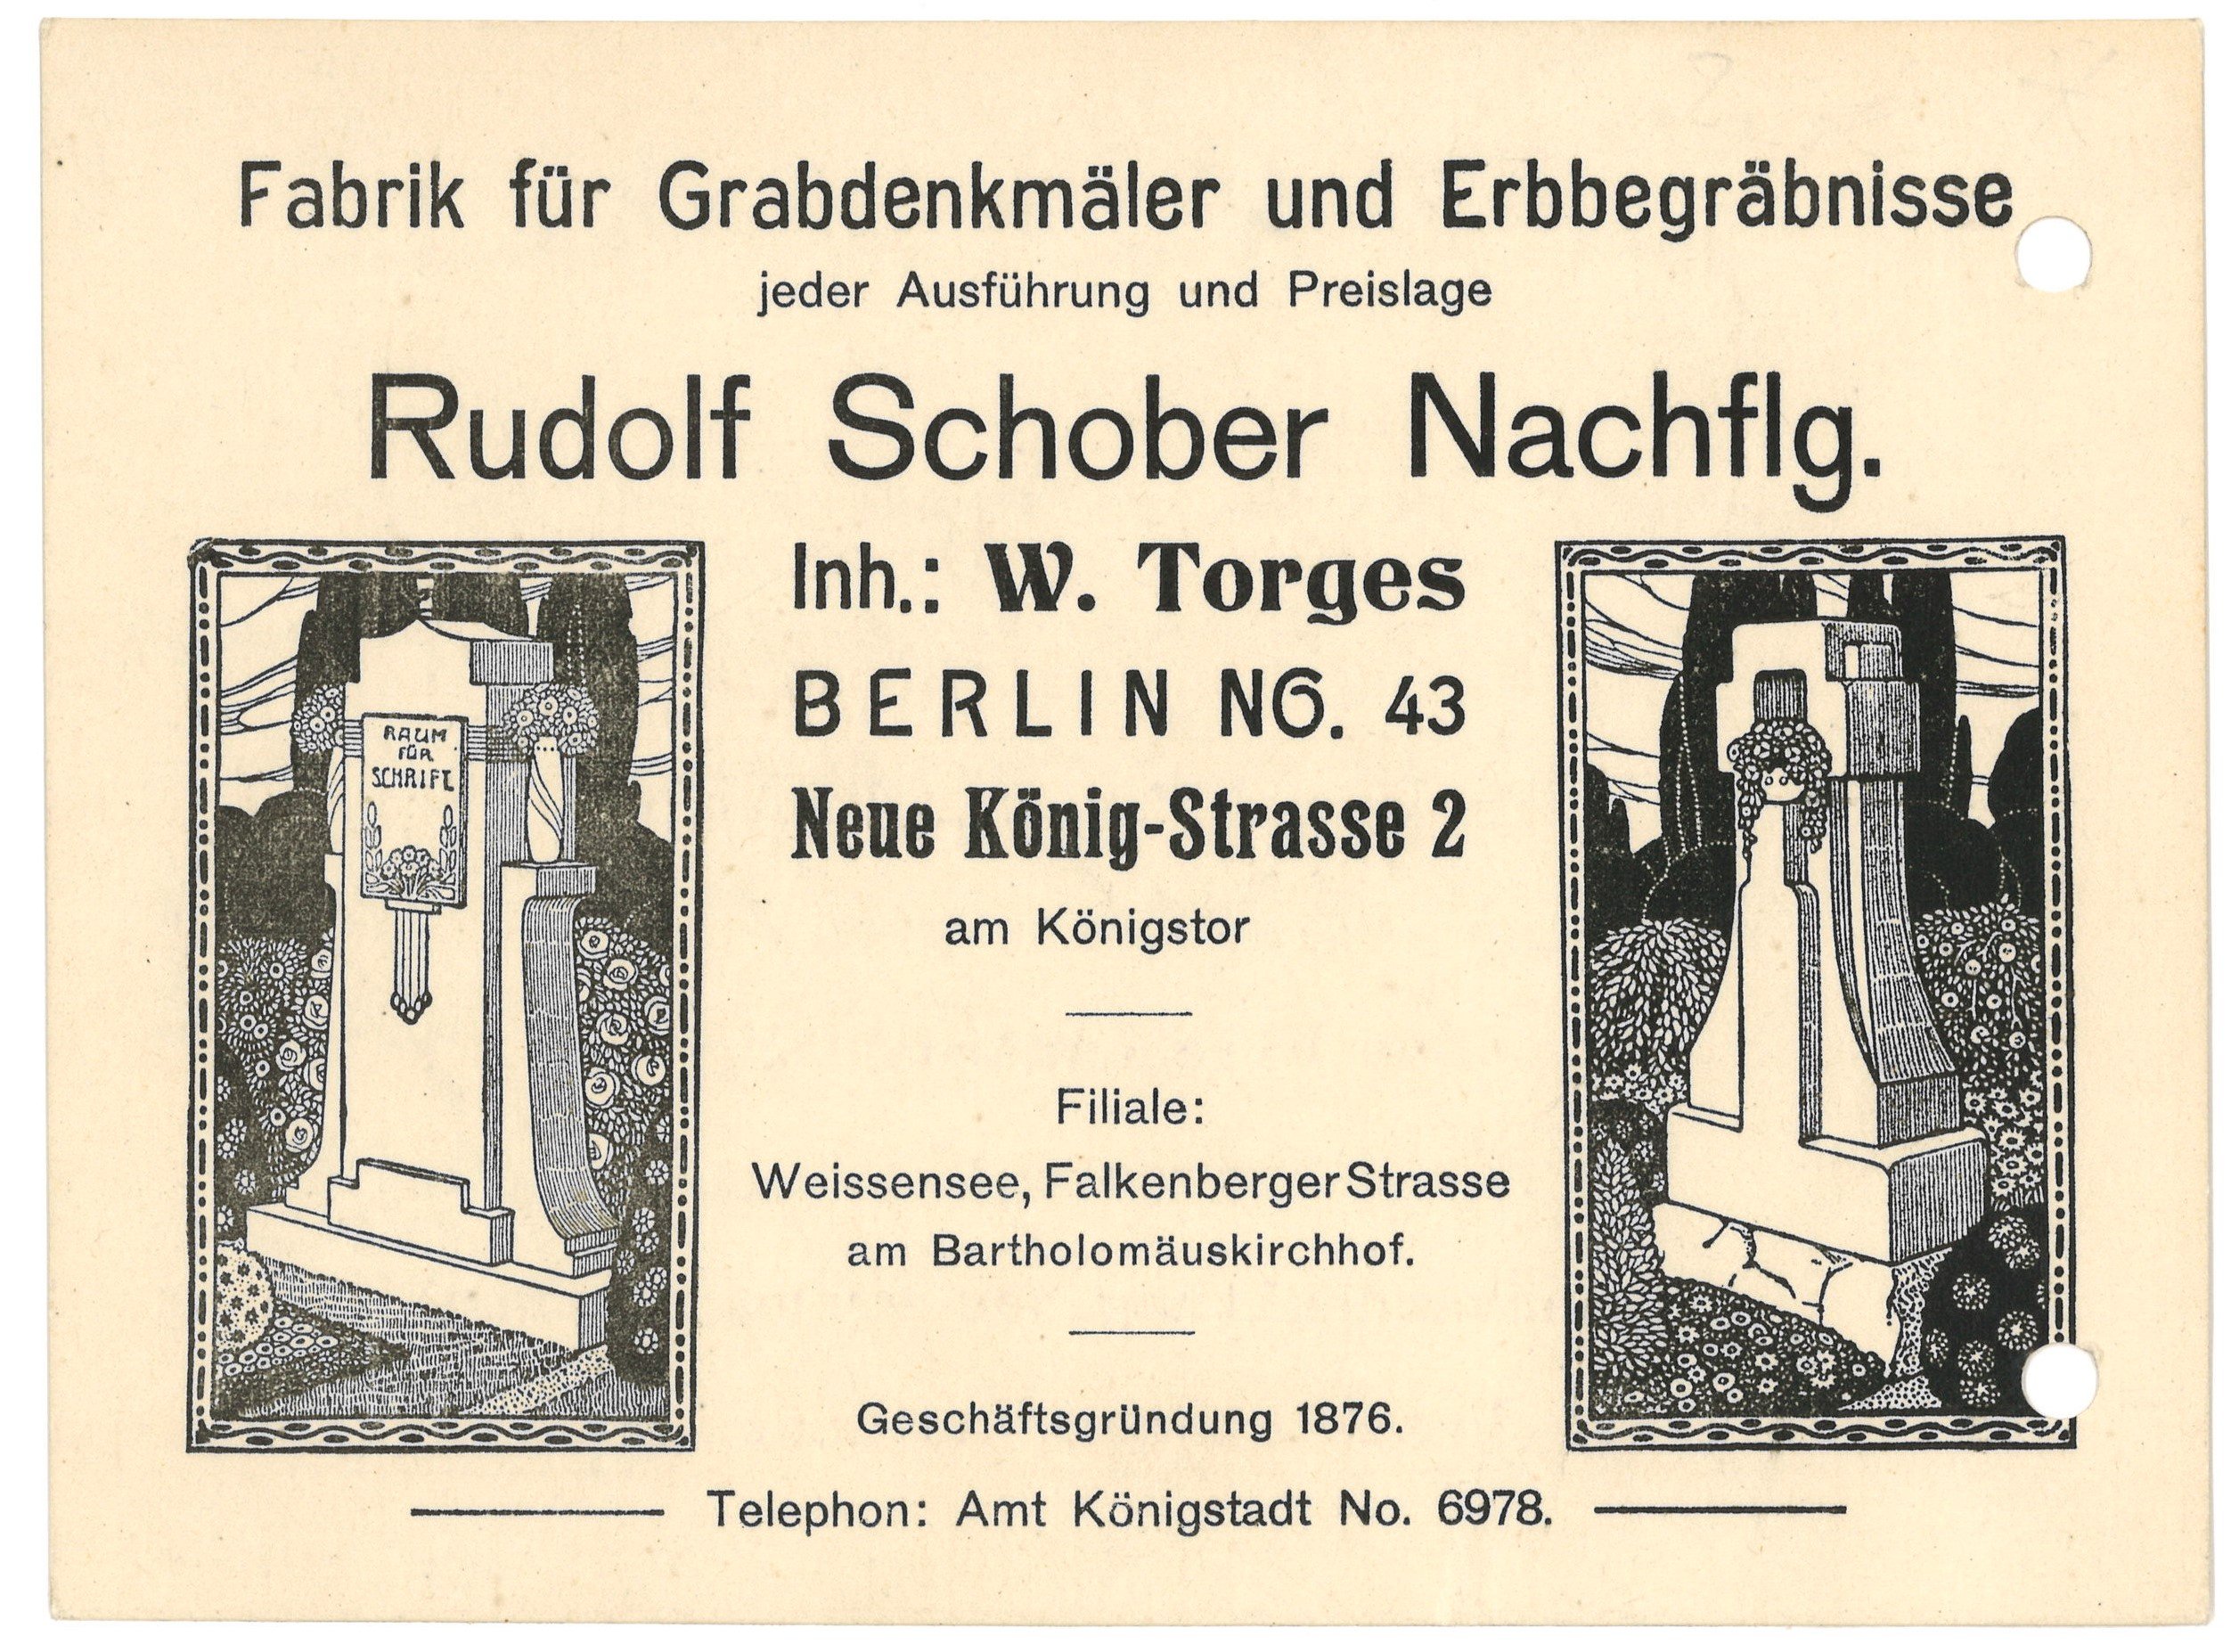 Geschäftsbriefkarte der Grabdenkmälerfabrik Rudolf Schober Nachflg. in Berlin 1919 (Landesgeschichtliche Vereinigung für die Mark Brandenburg e.V., Archiv CC BY)